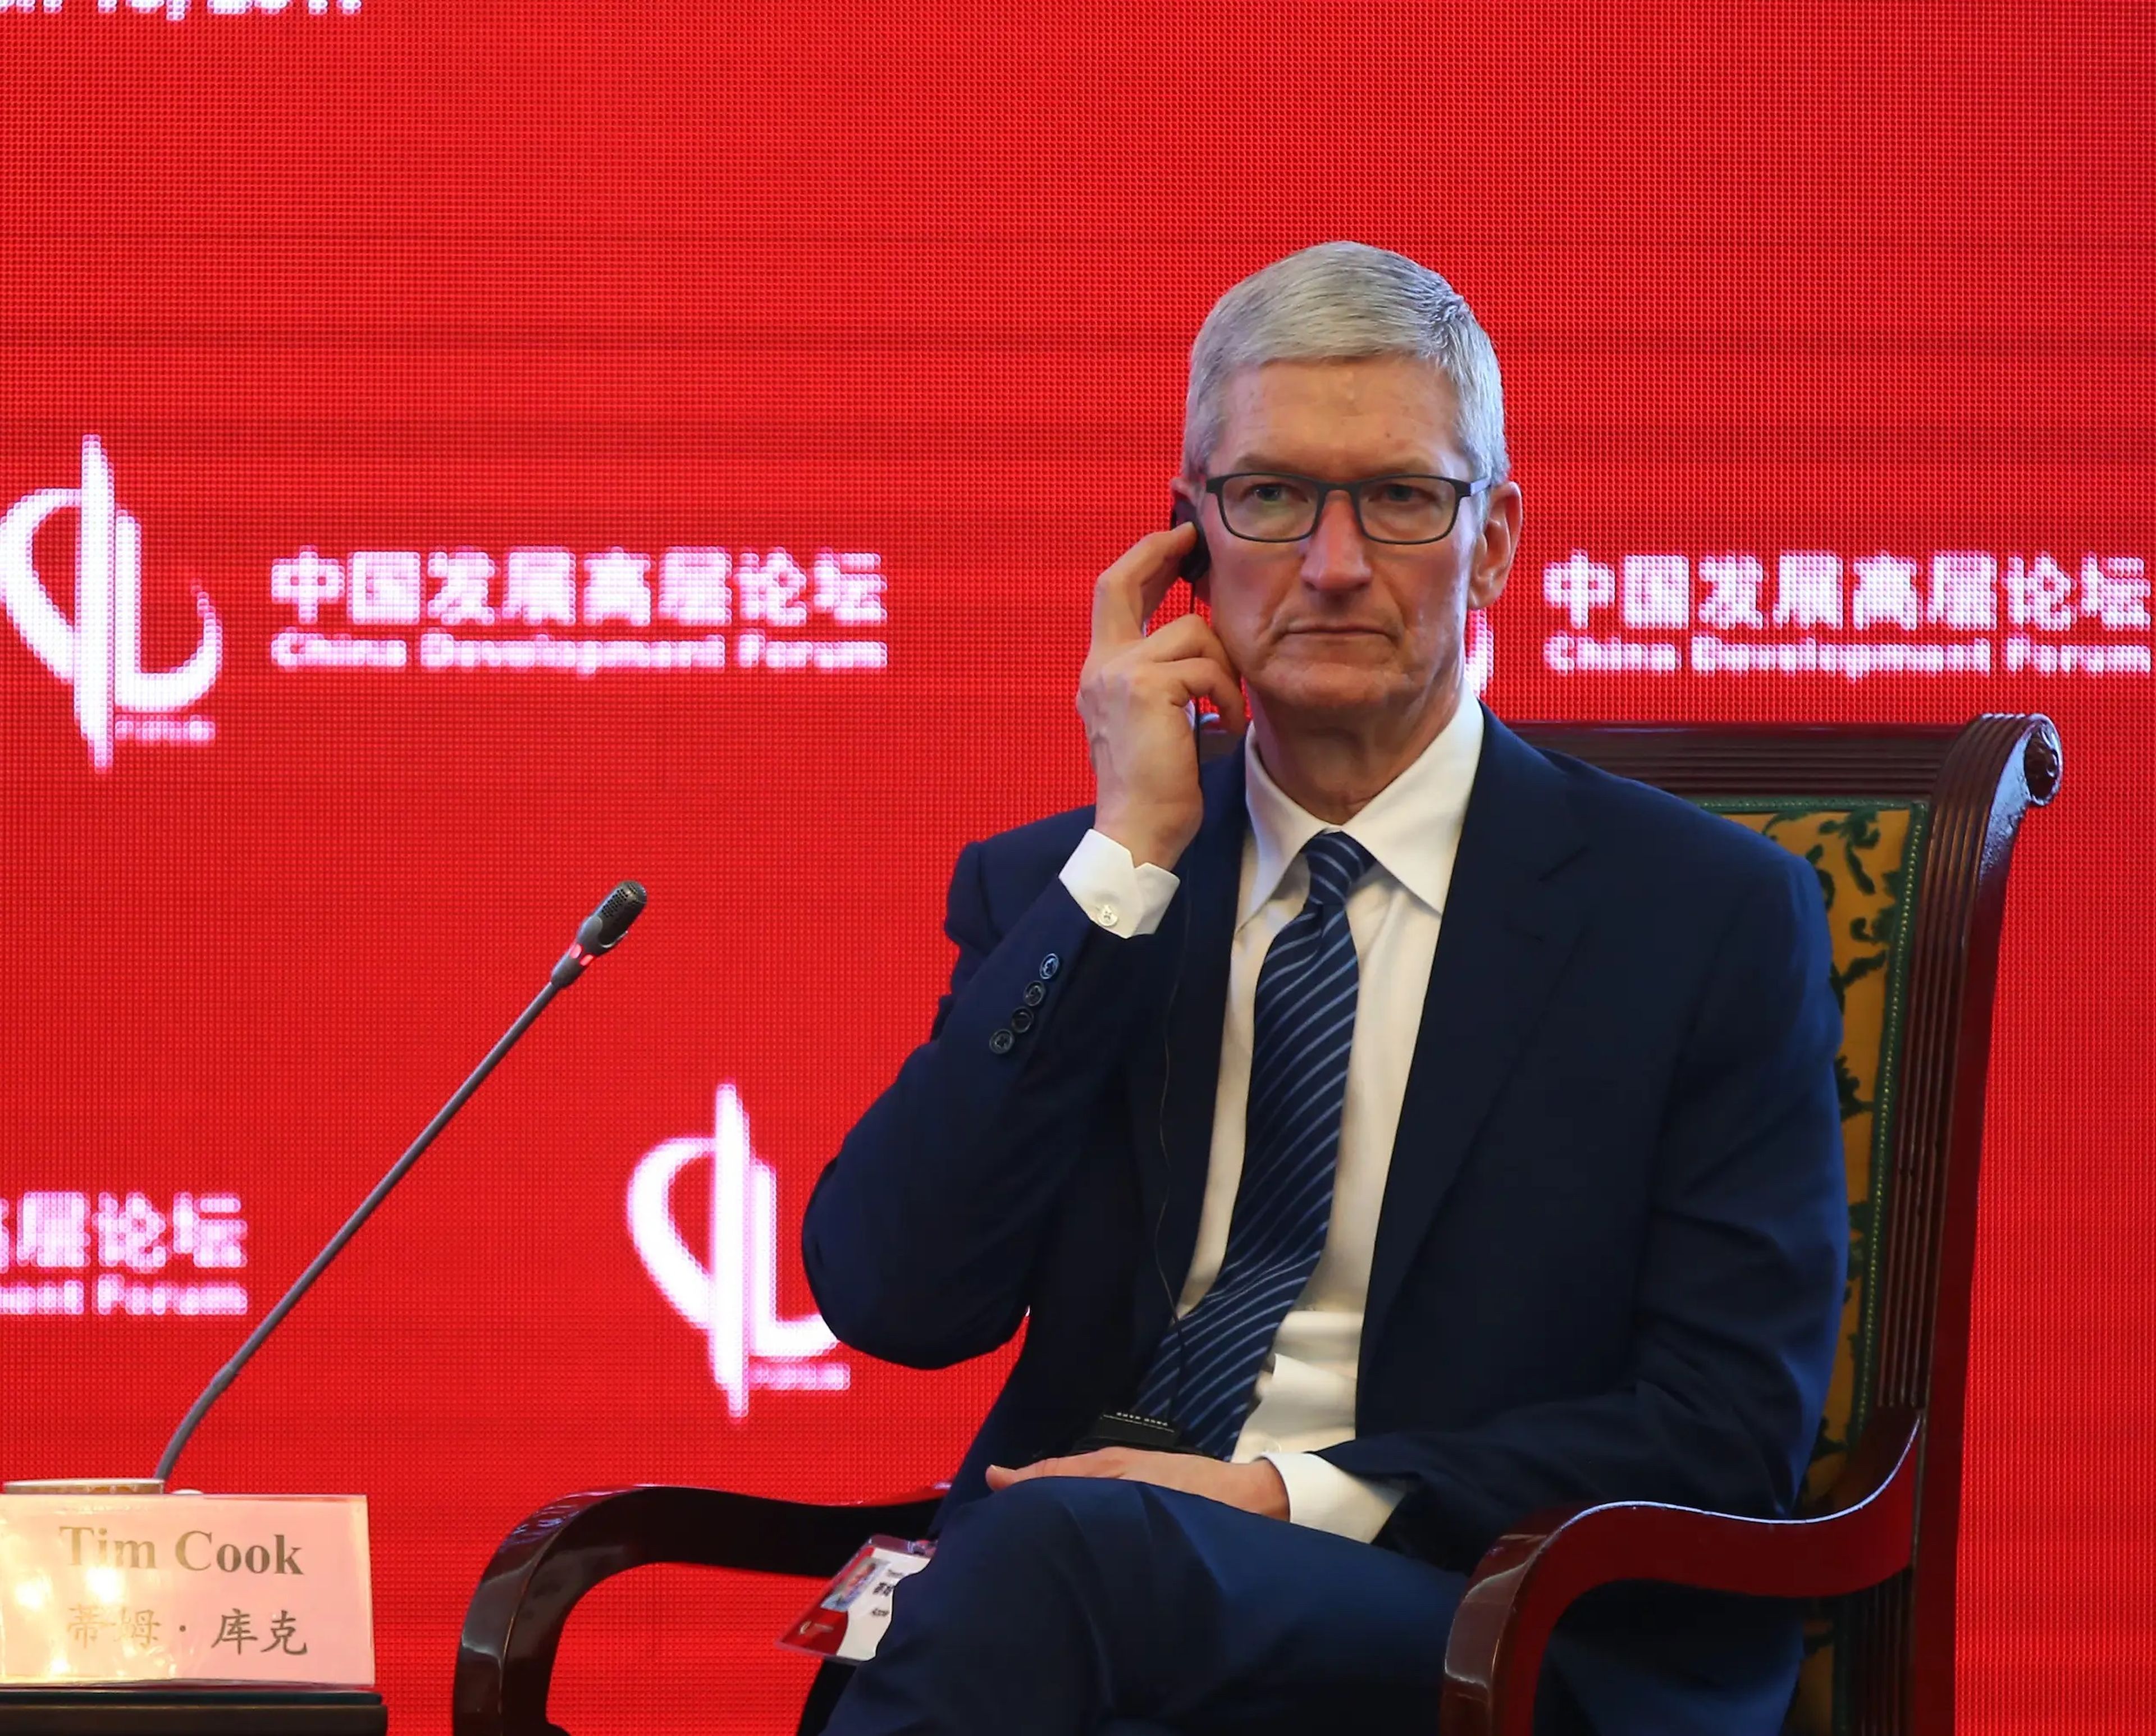 Tim Cook, CEO de Apple, durante una visita a China.